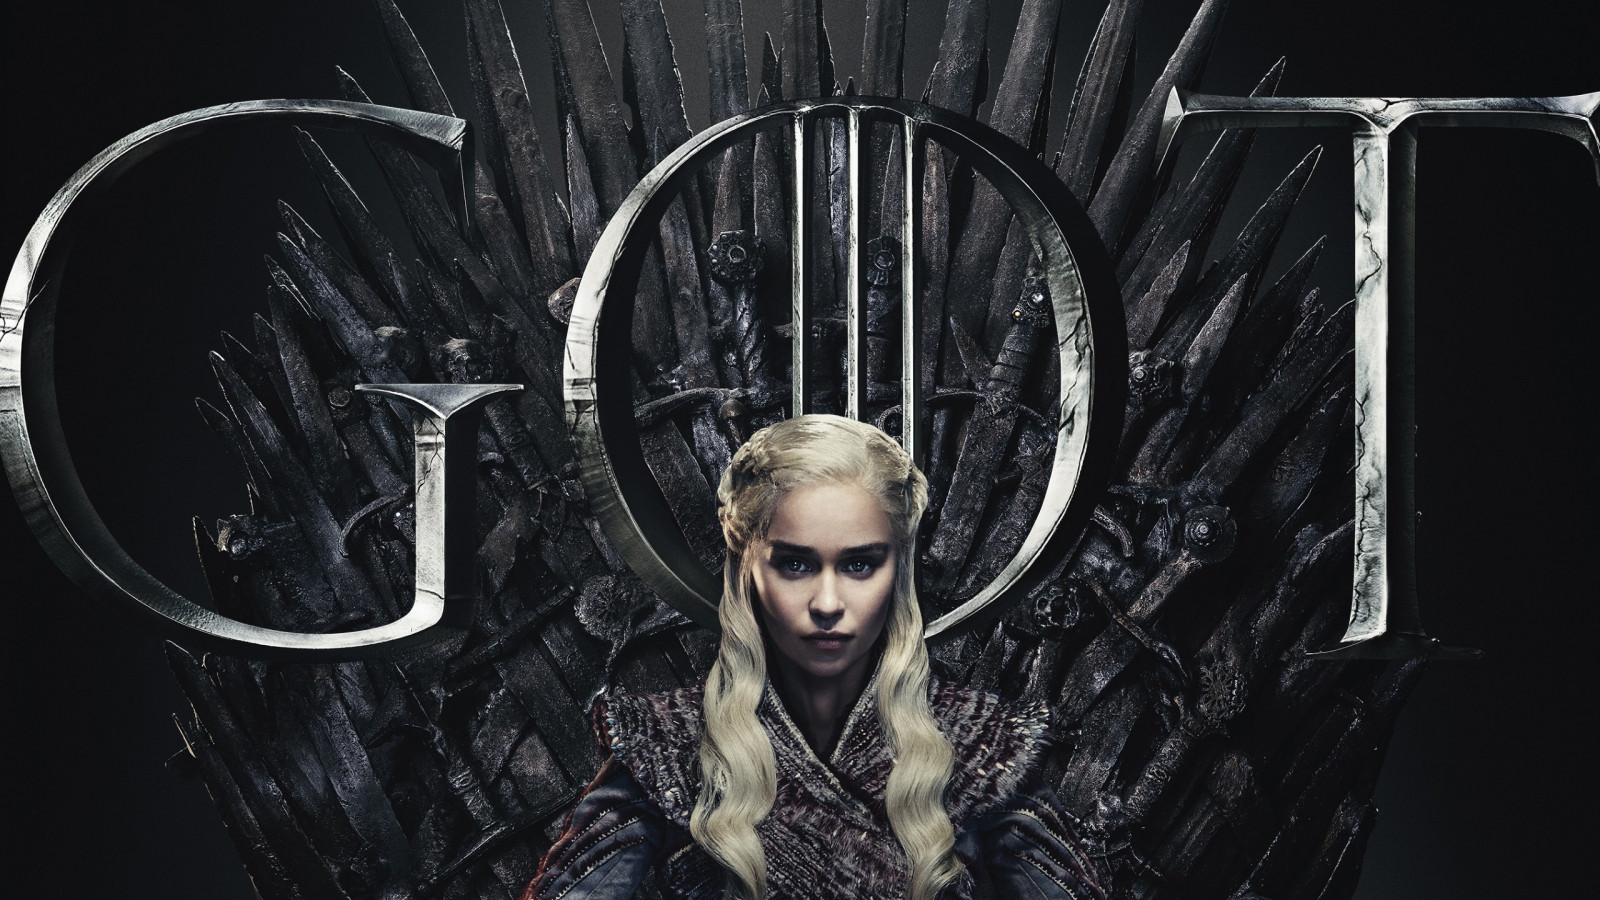 GOT 8 Daenerys Targaryen poster wallpaper 1600x900